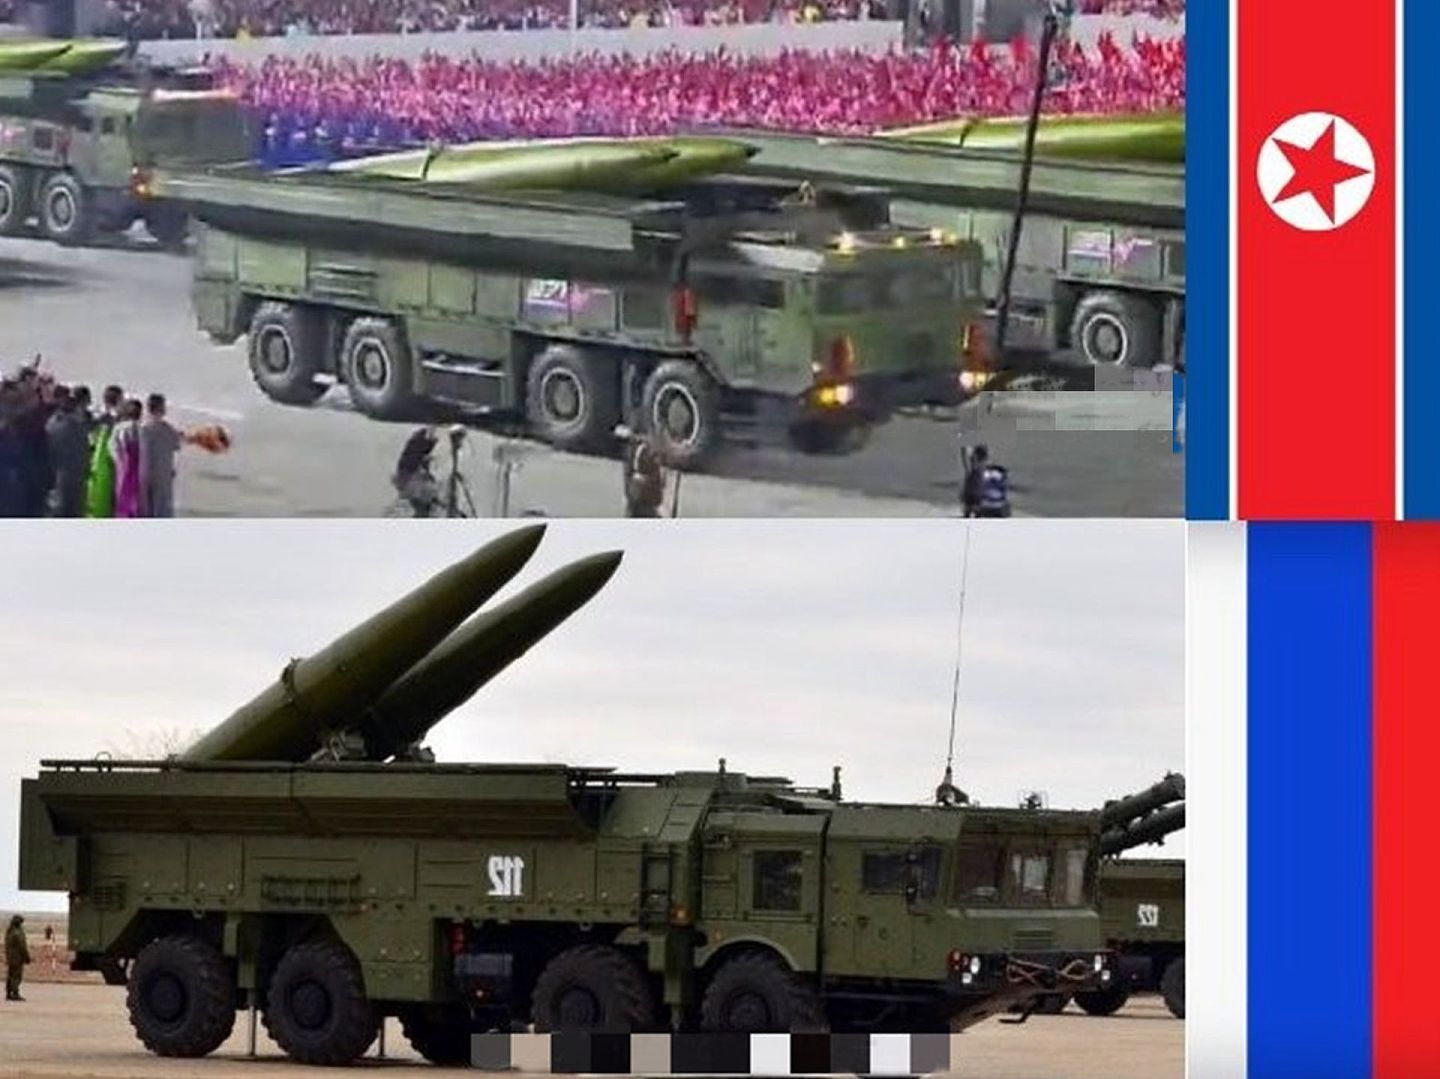 2020年10月10日，朝鲜在平壤举行大阅兵，展示多种新型武器装备。图为朝鲜弹道导弹与俄罗斯“伊斯坎德尔-M”导弹对比。（微博@Armstrong的空军之翼）